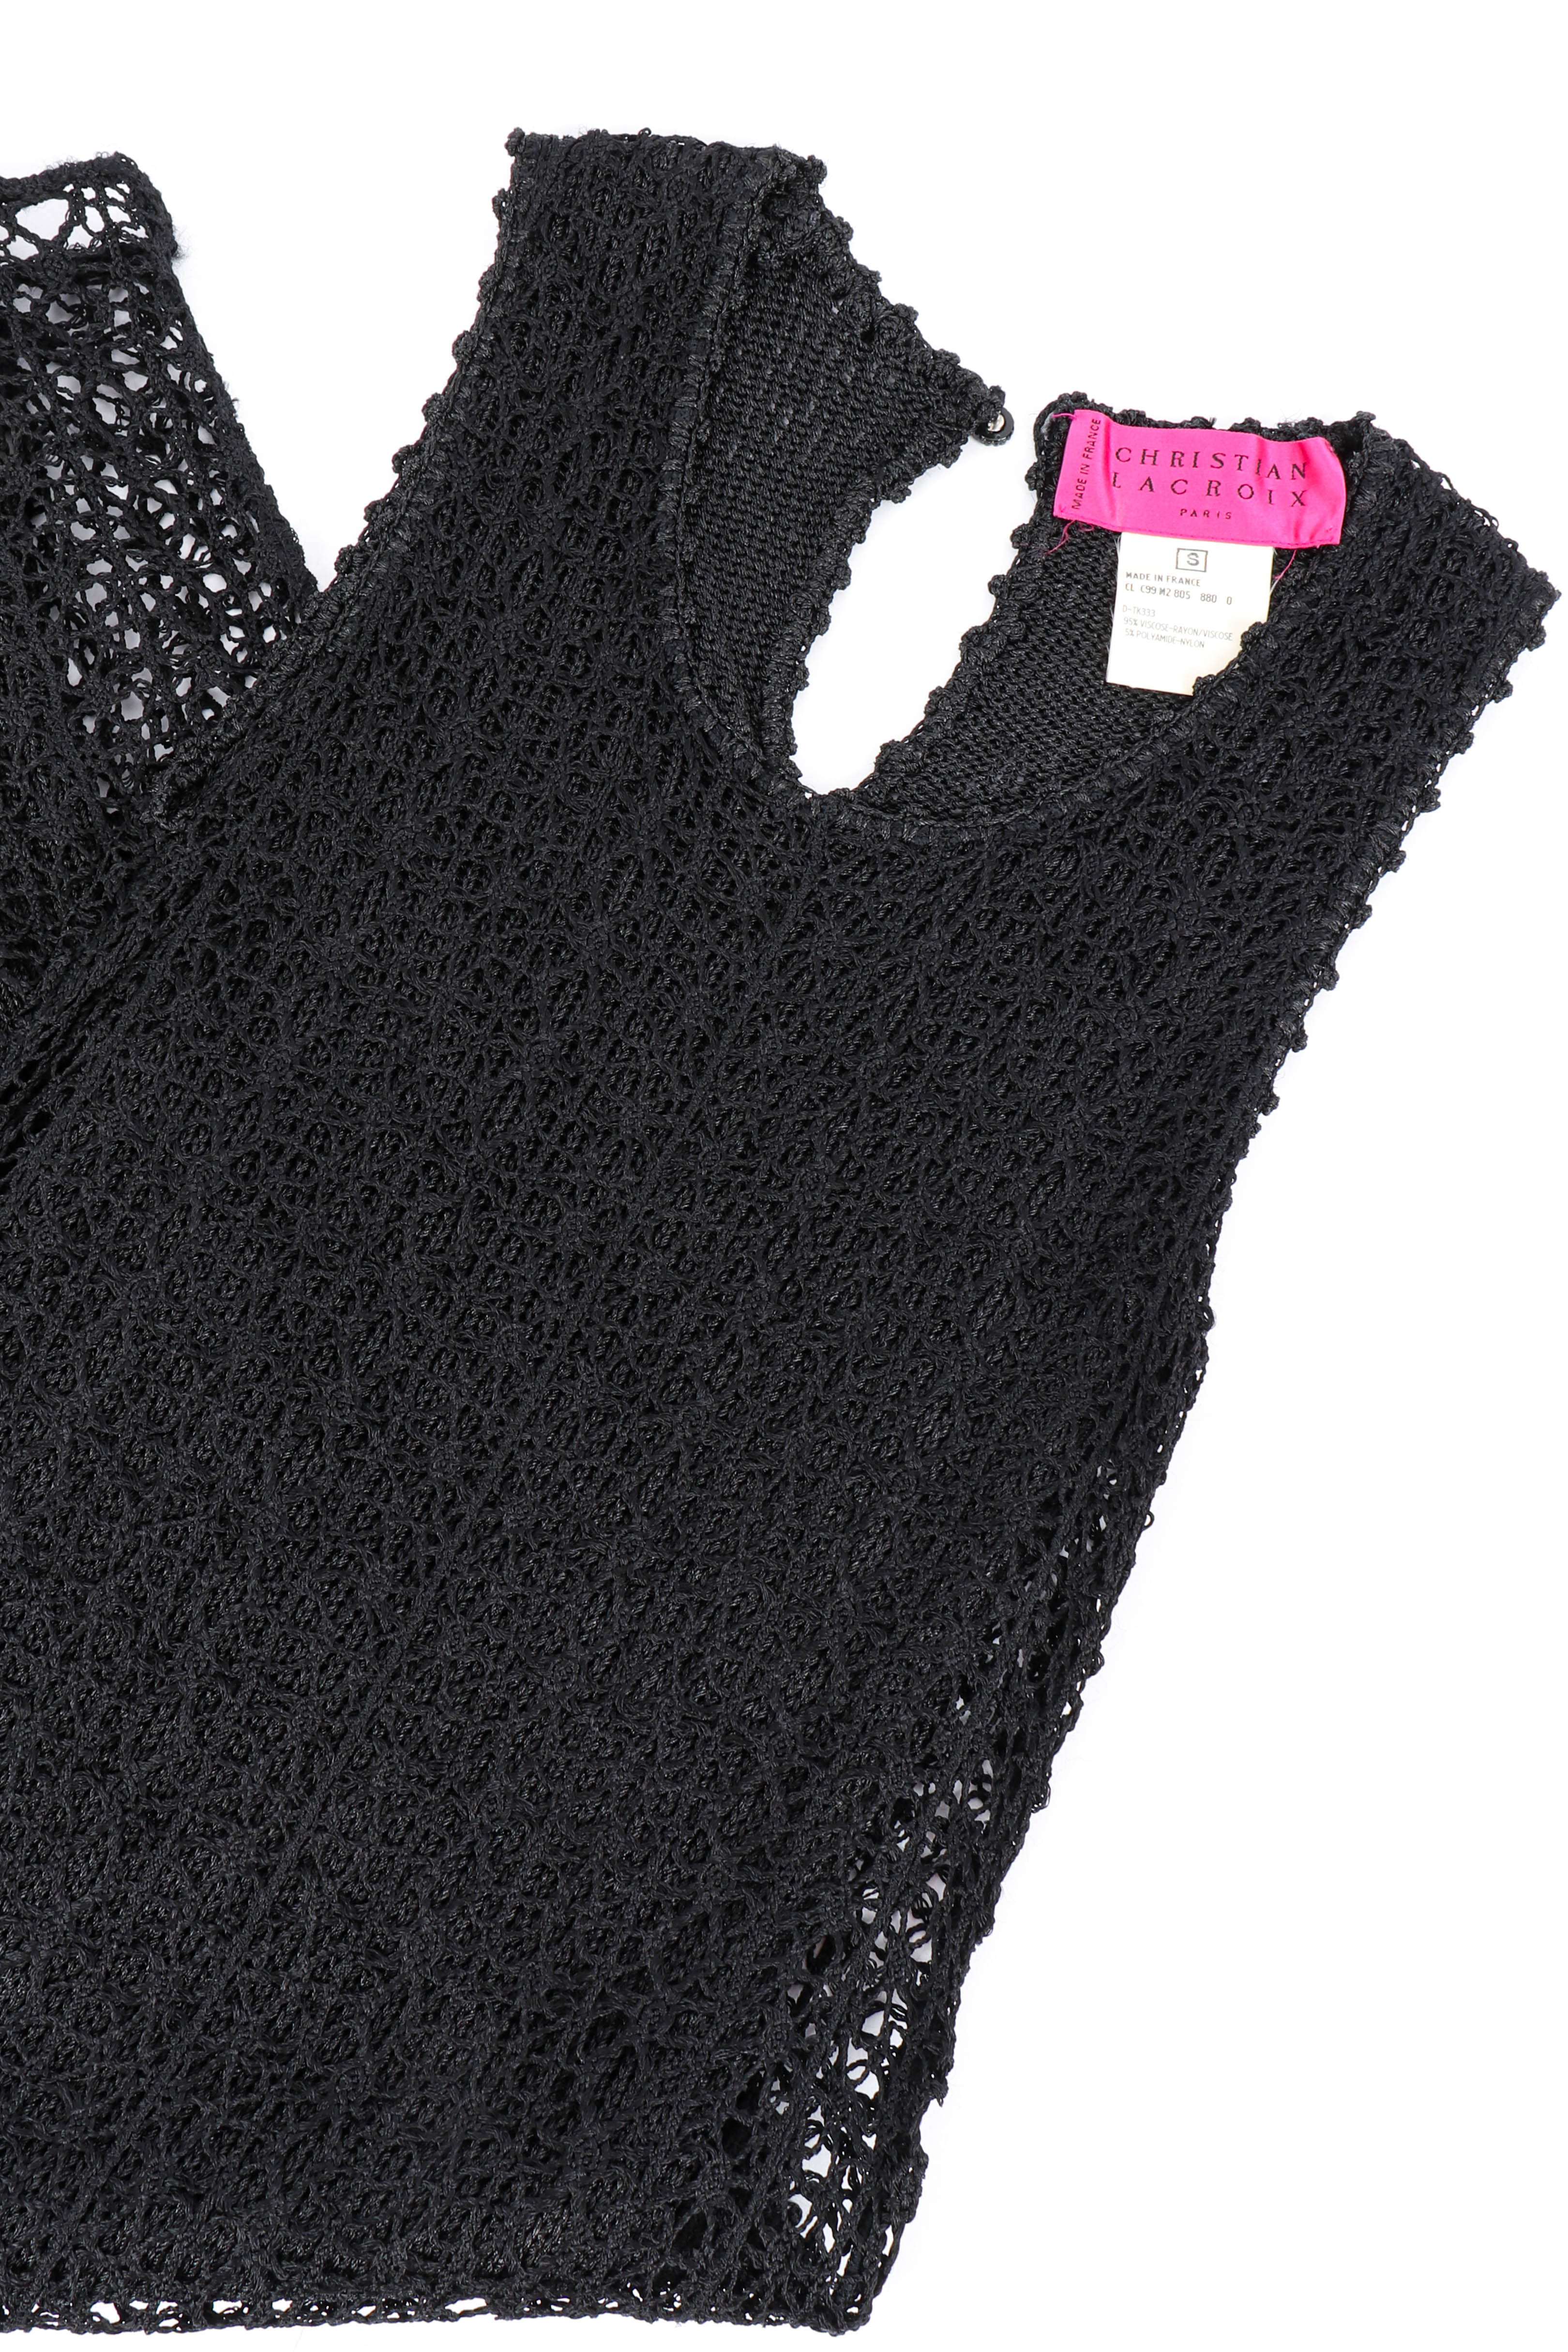 Vintage Christian Lacroix Open Knit Crochet Dress front laid flat @recessla